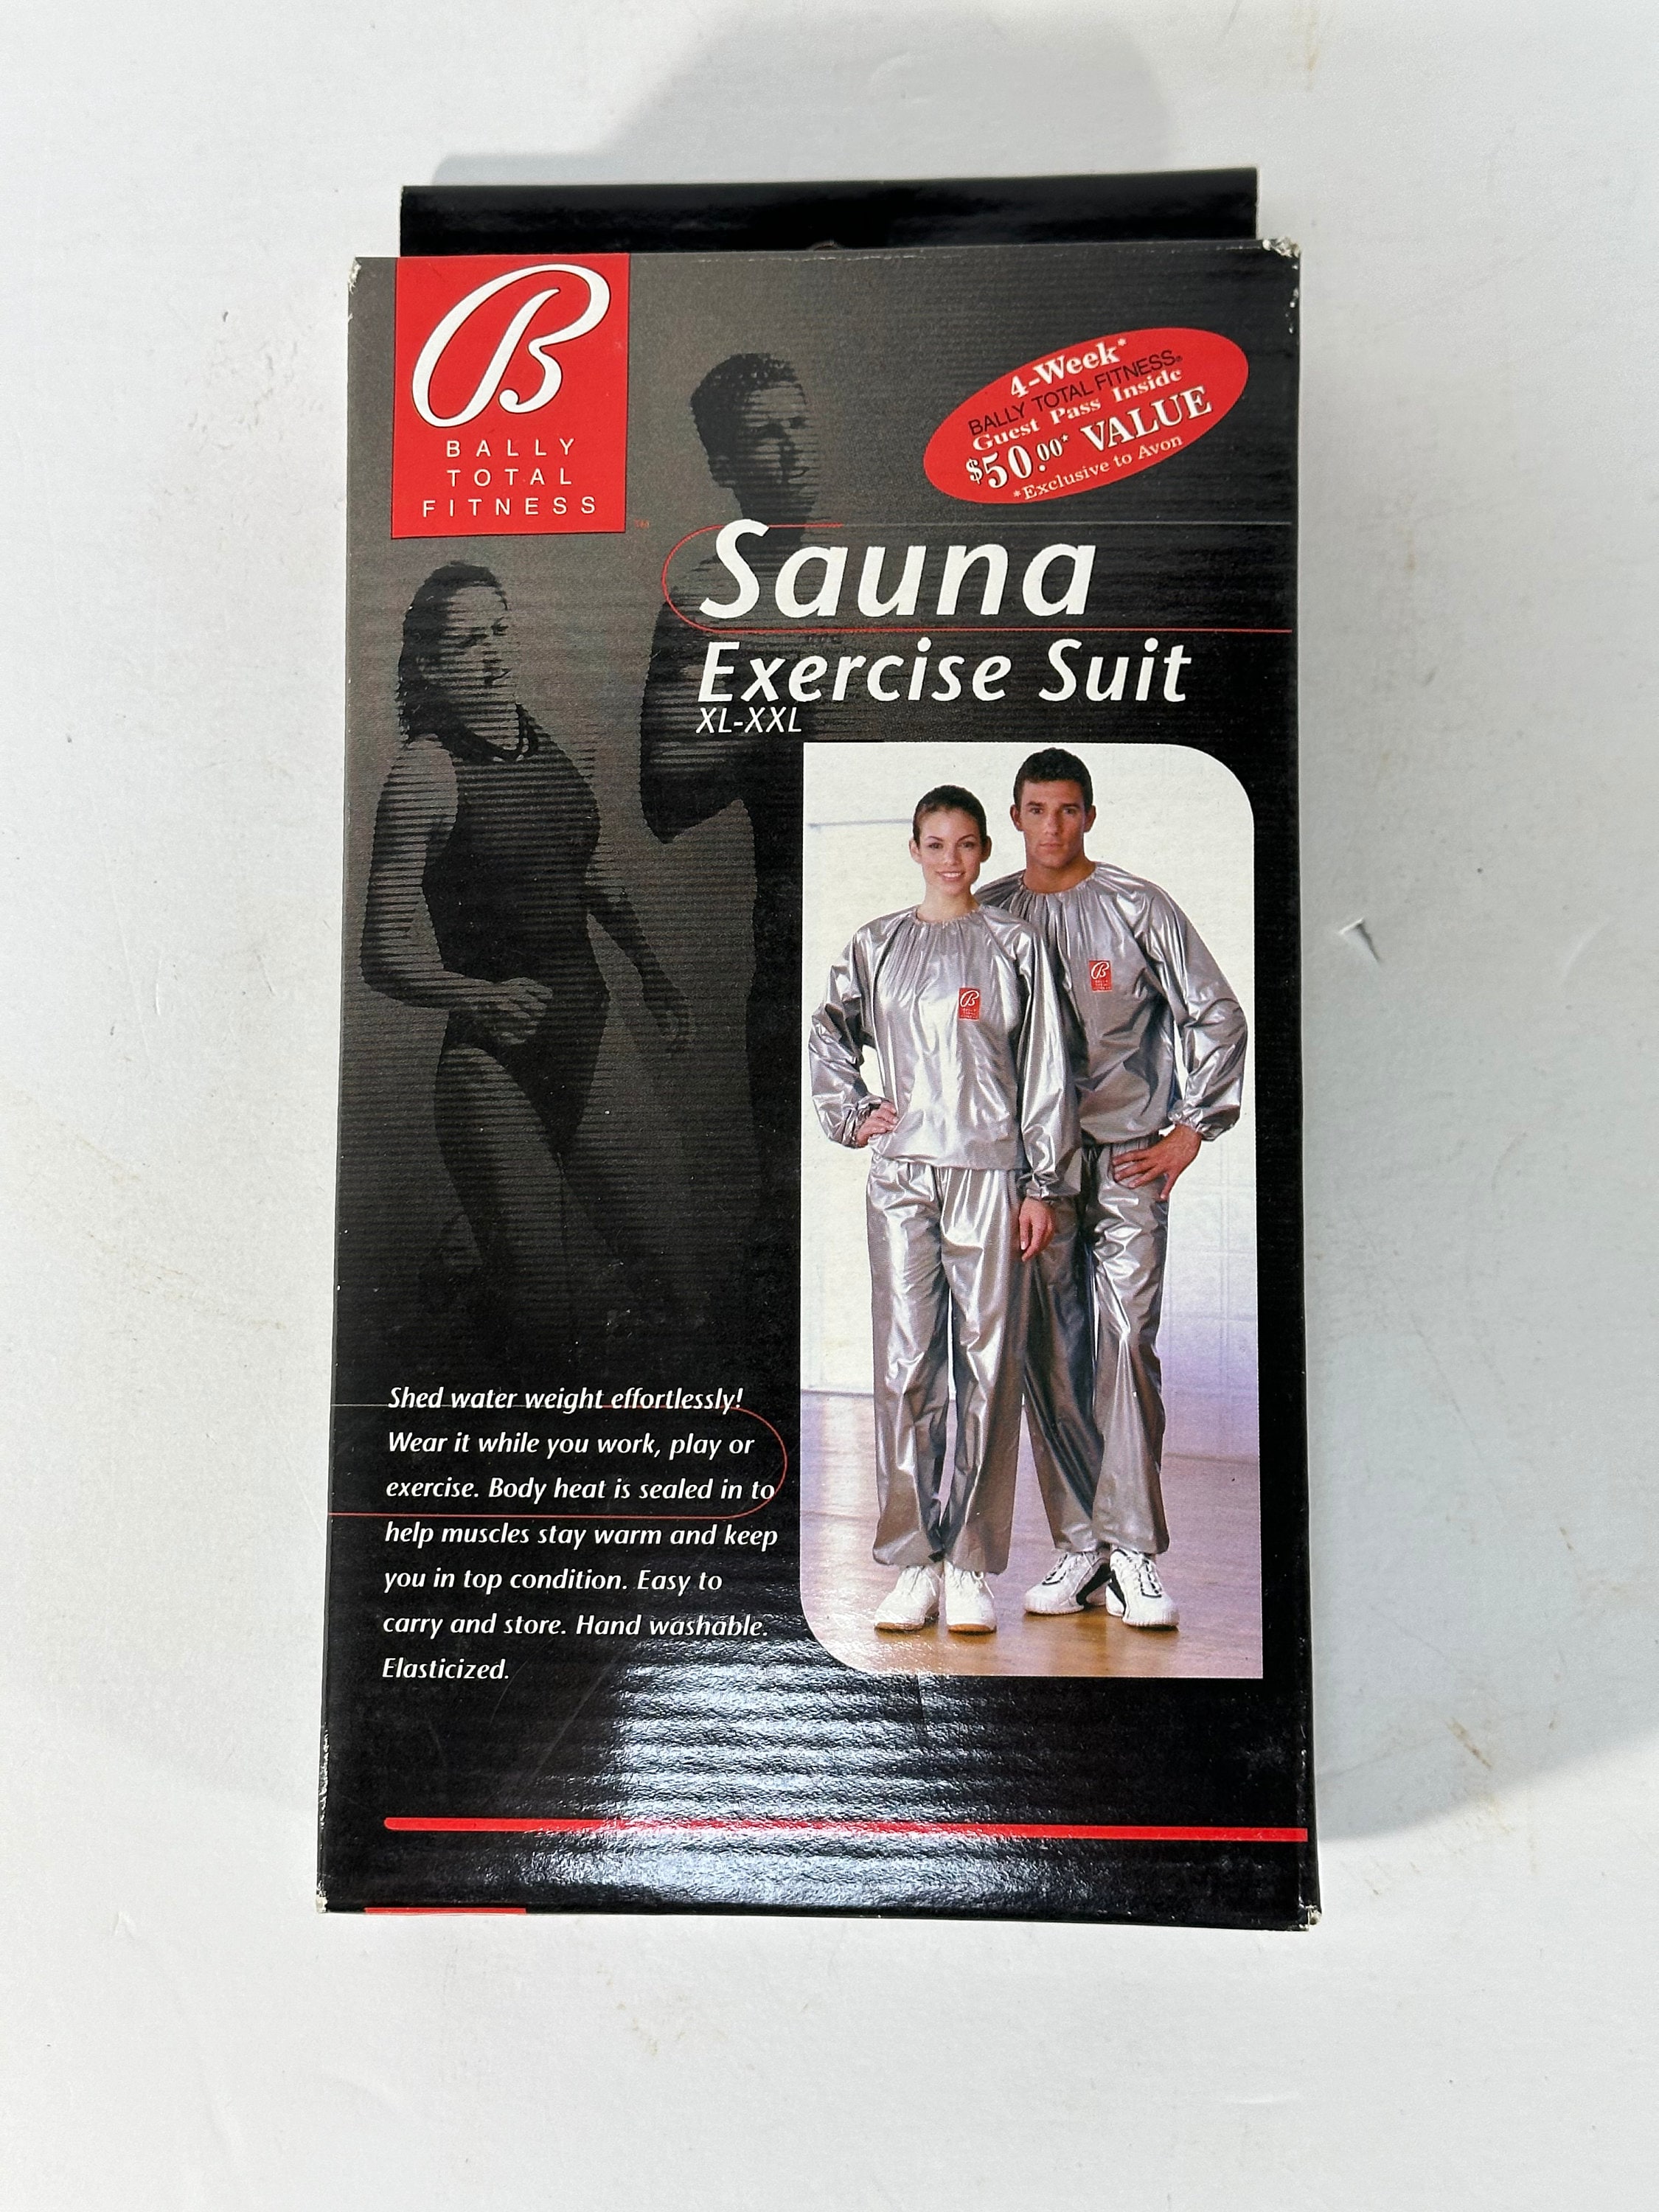 Sauna Suit 